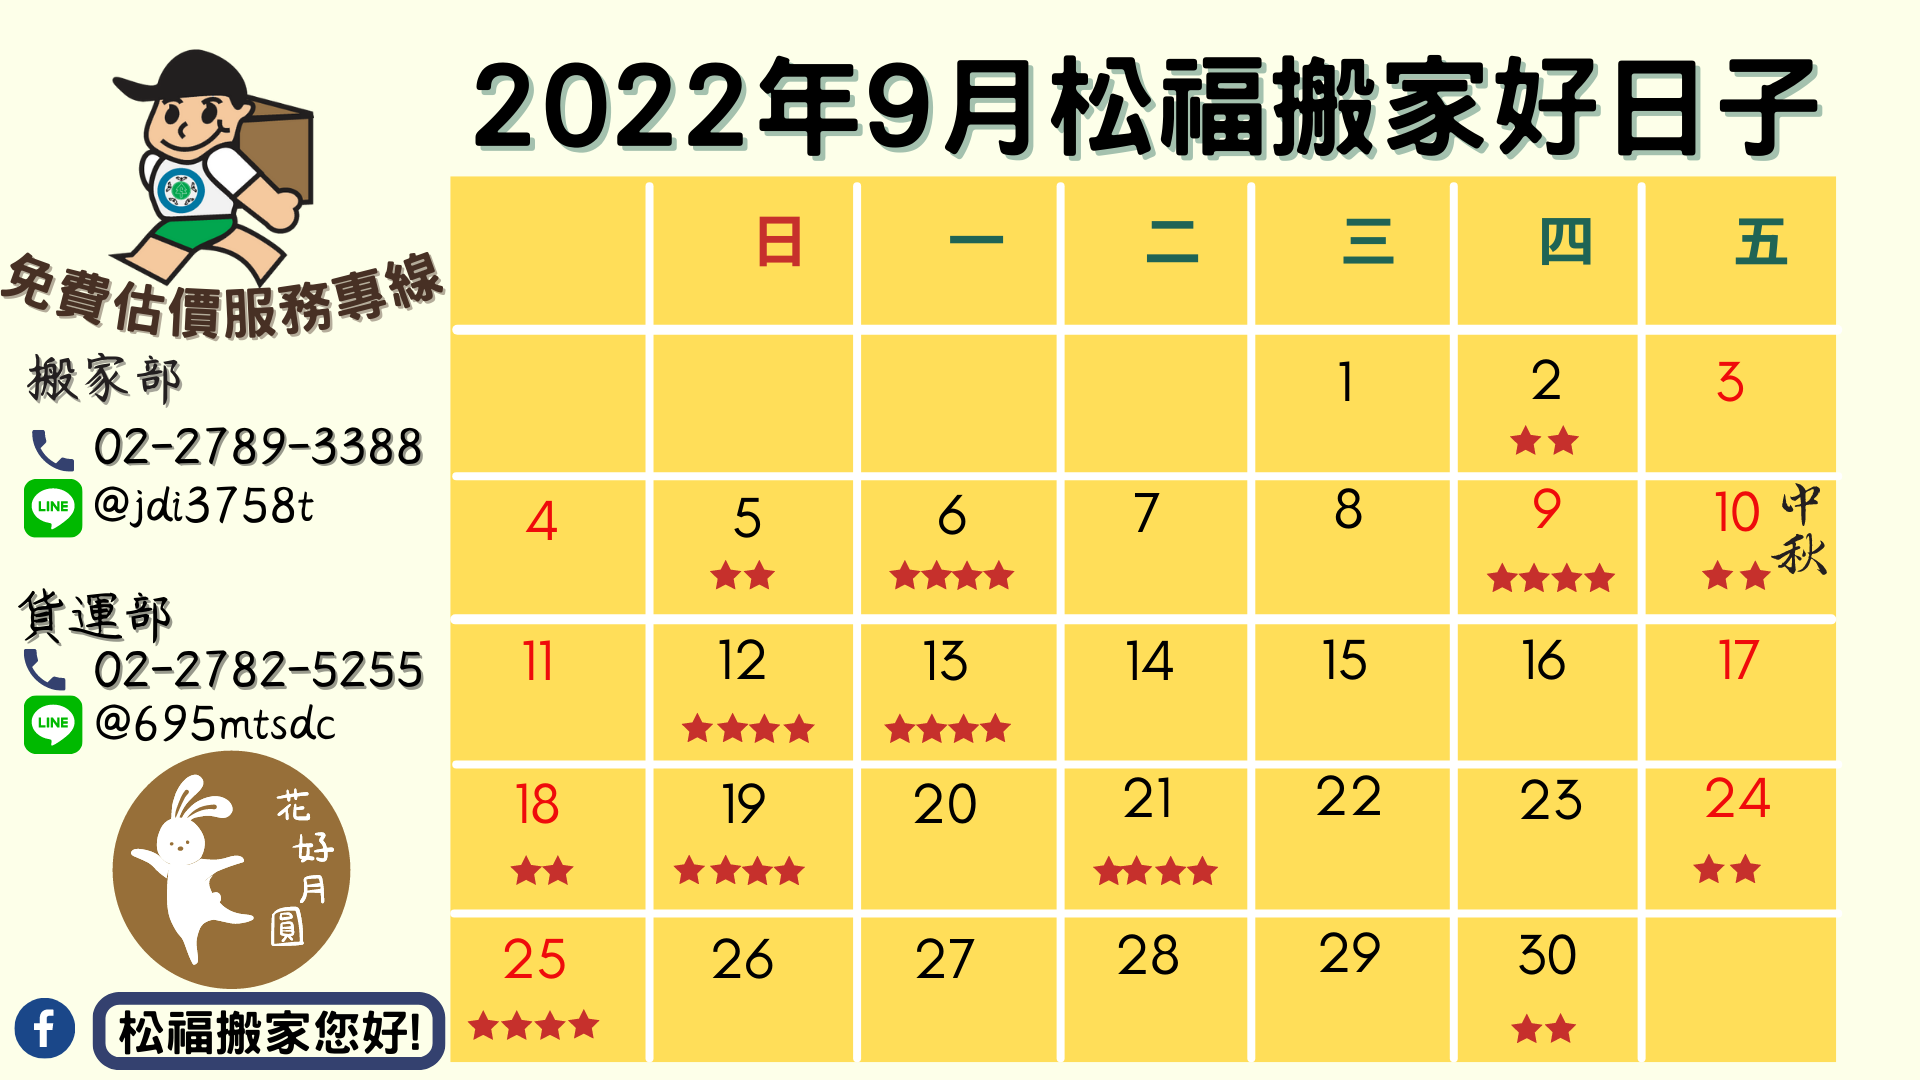 『2022年9月搬家好日子』請找松福搬家您好!推薦台北搬家、公司搬遷、精緻搬家、免動手打包、搬家公司推薦首選!